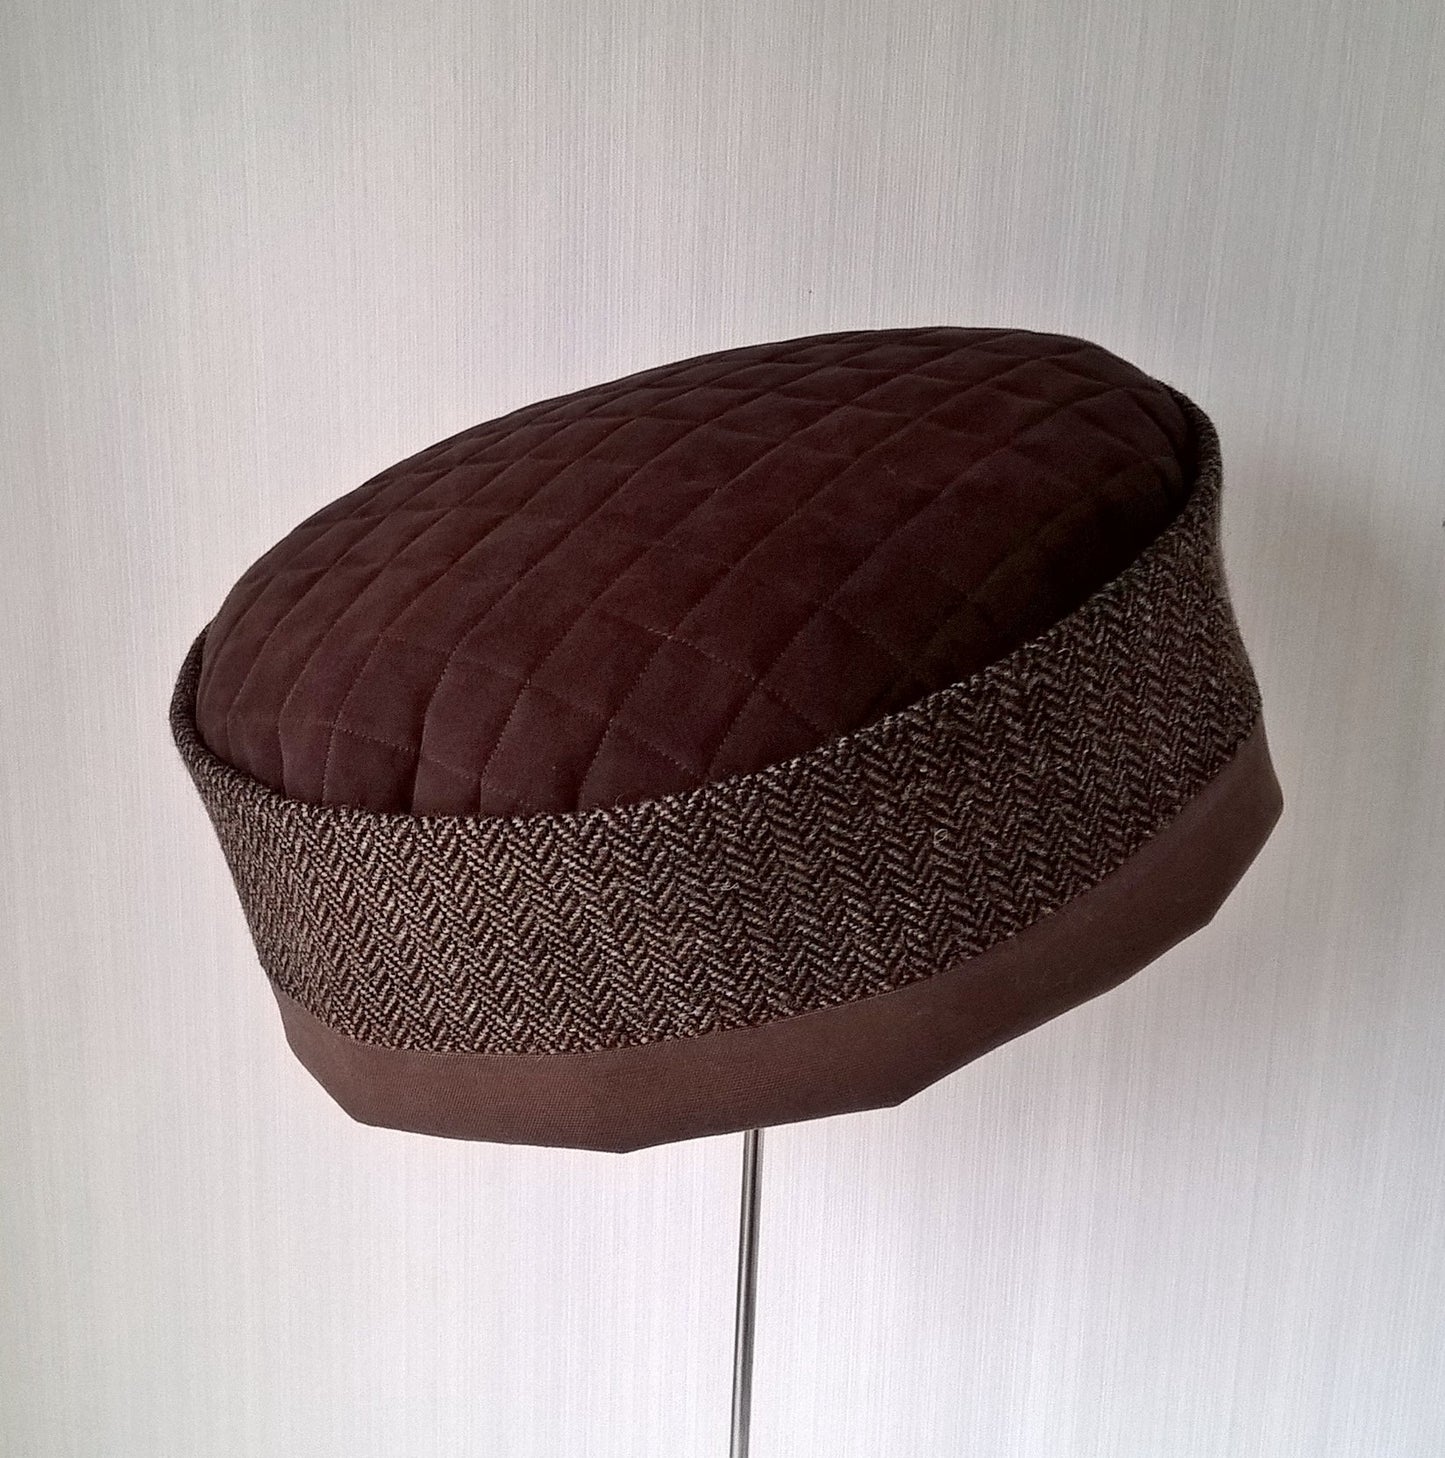 Brimless wool cap in brown tweed herringbone with quilted tip